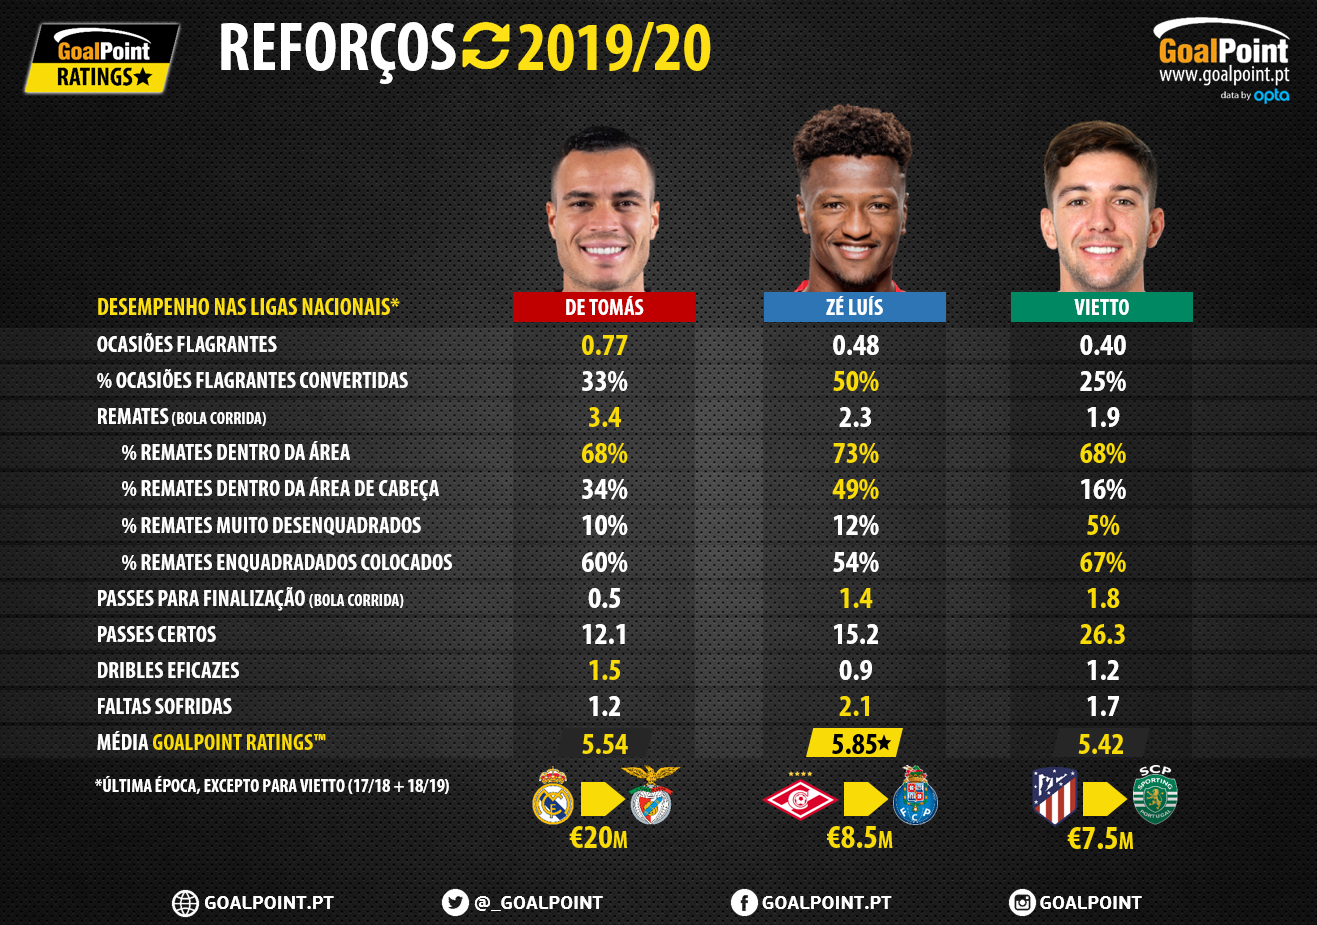 GoalPoint-Reforcos-De-Tomas-Ze-Luis-Vietto-Benfica-Porto-Sporting-Liga-NOS-201920-infog